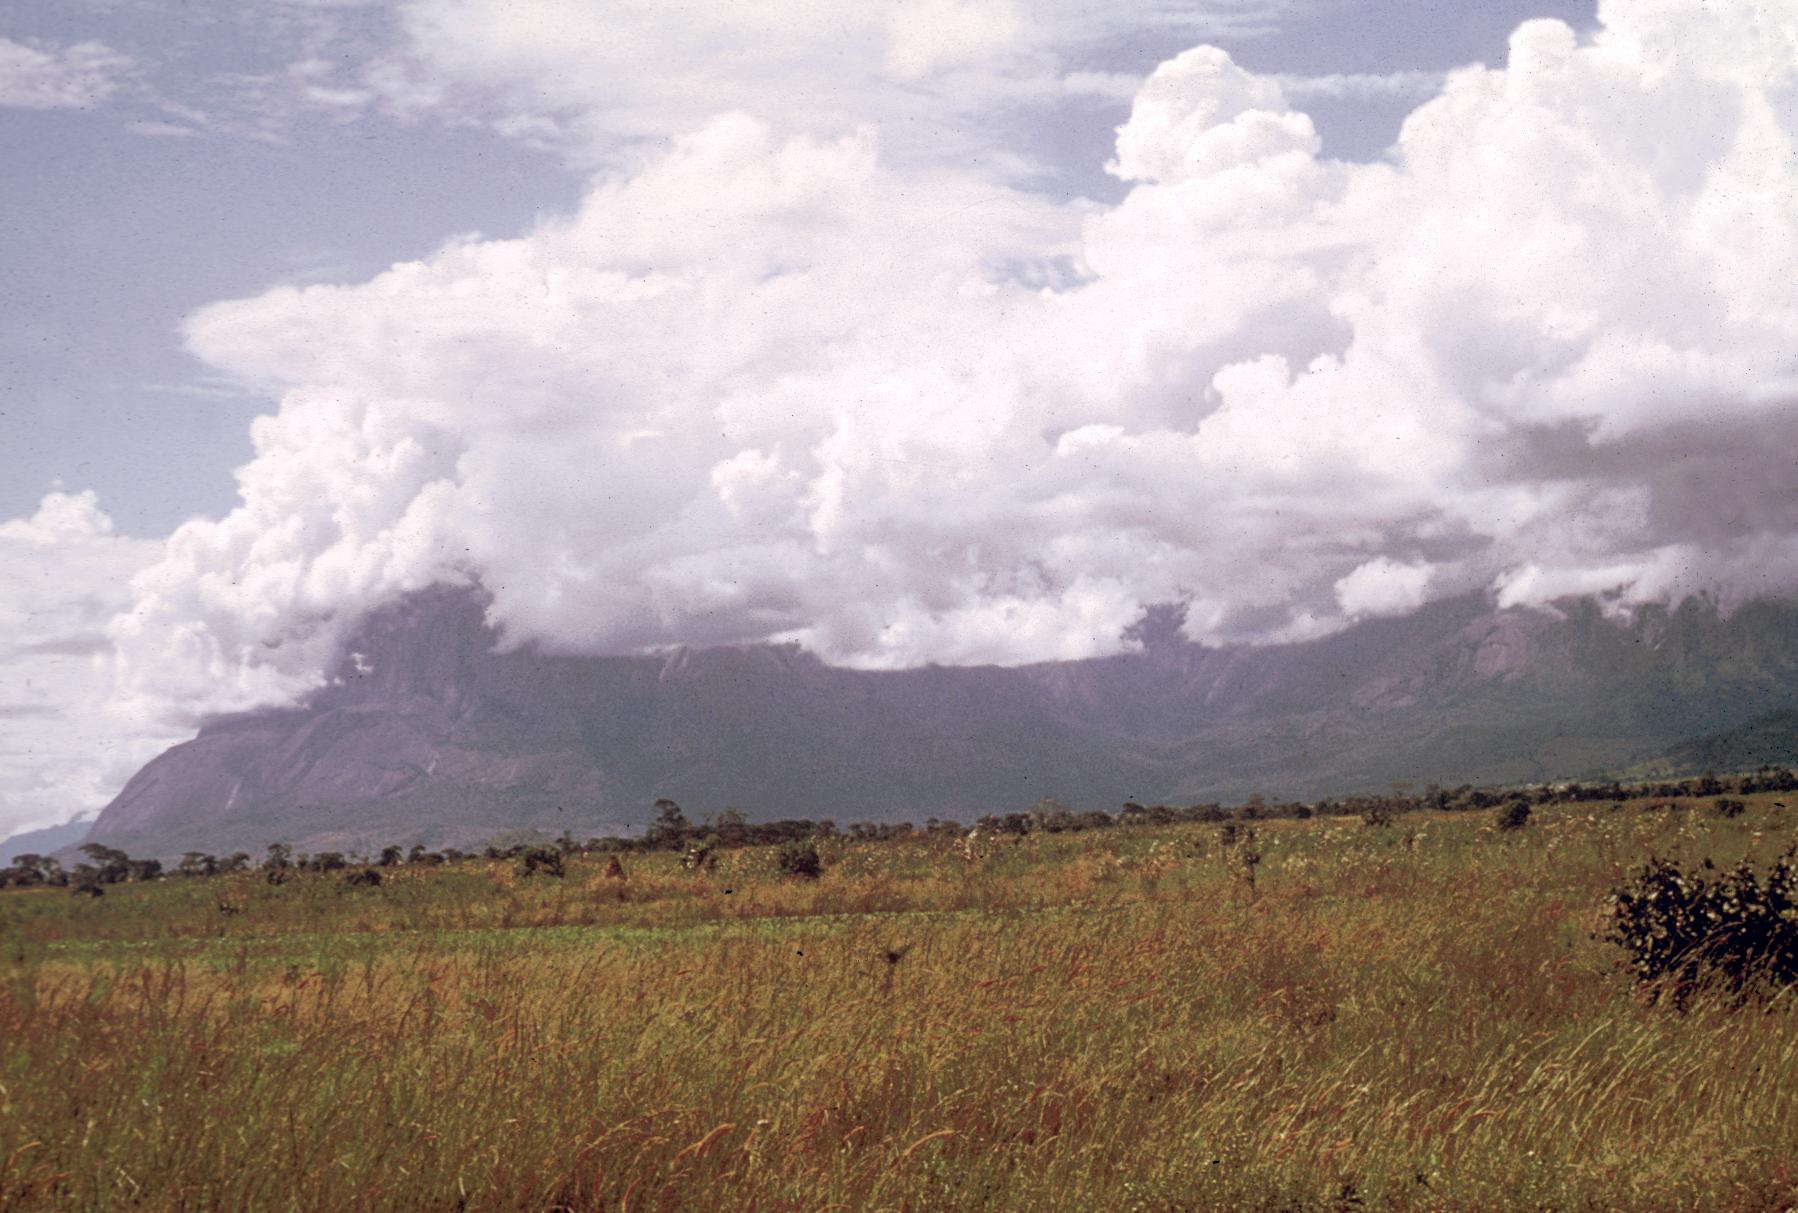 Mt. Mlanje Hidden by Clouds